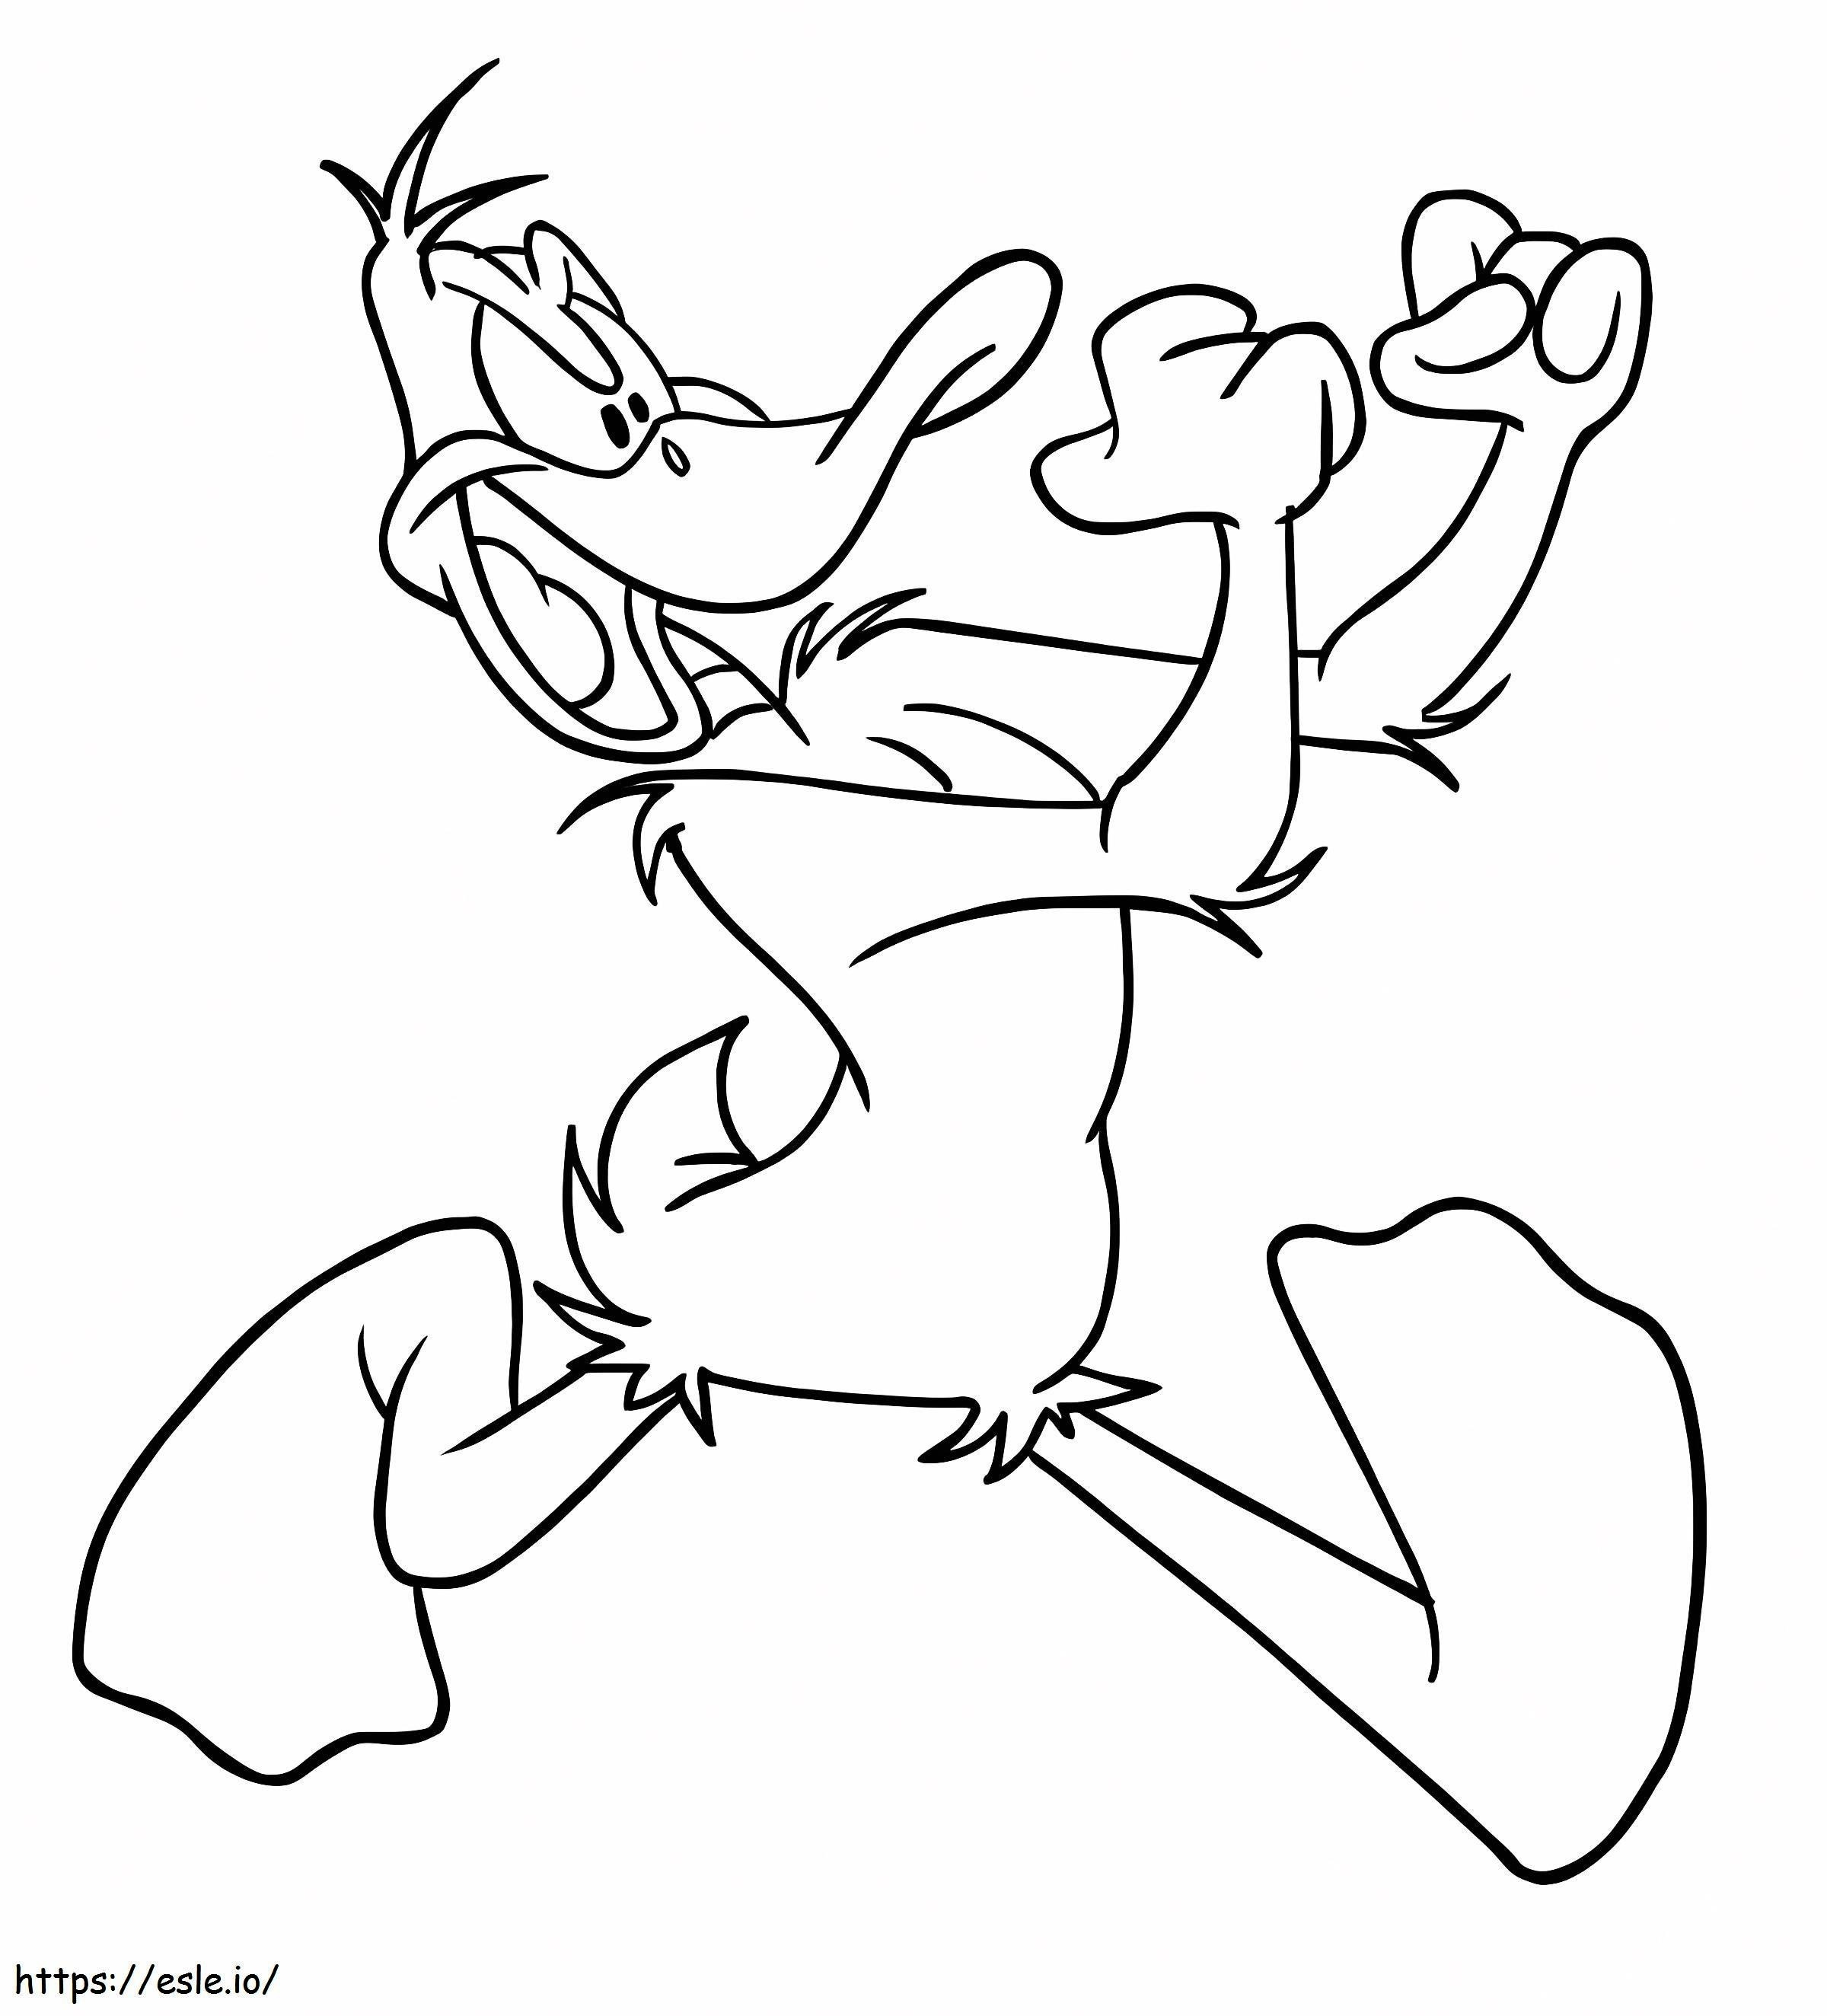 Daffy Ördek Dövüşü boyama